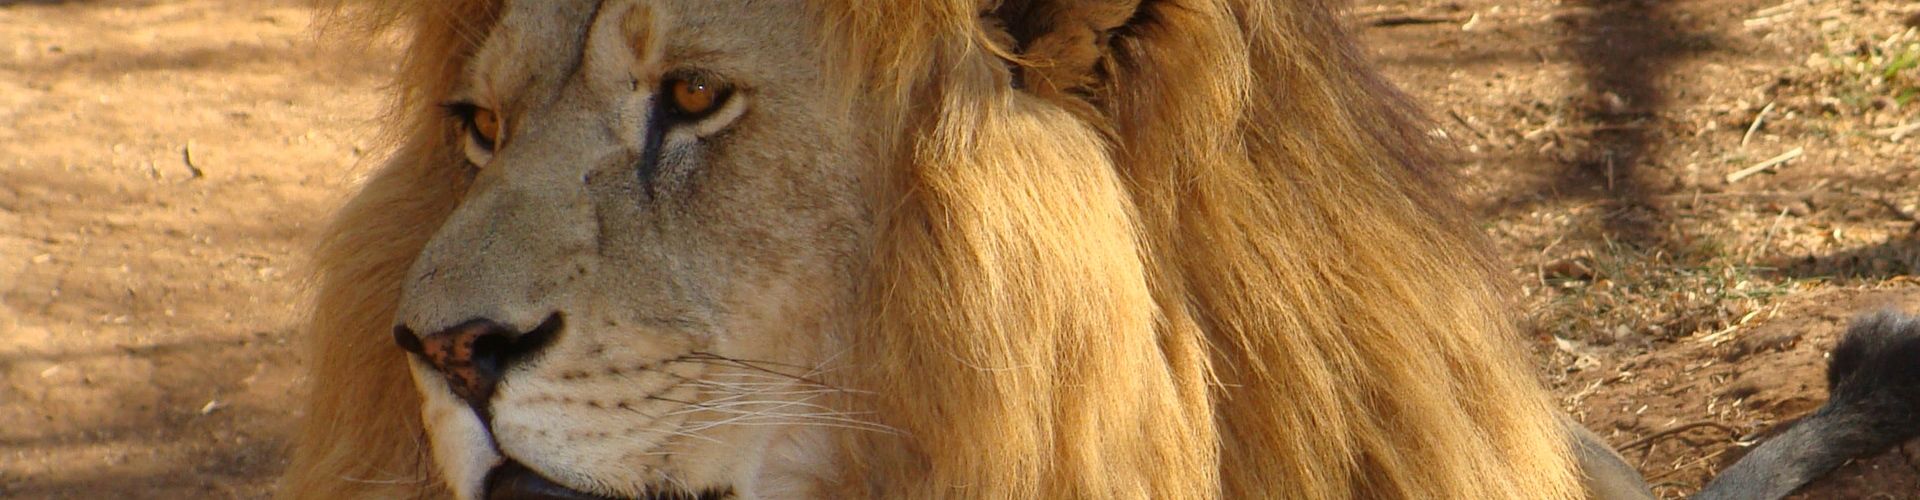 Un león macho mayor con cicatrices y una melena impresionante